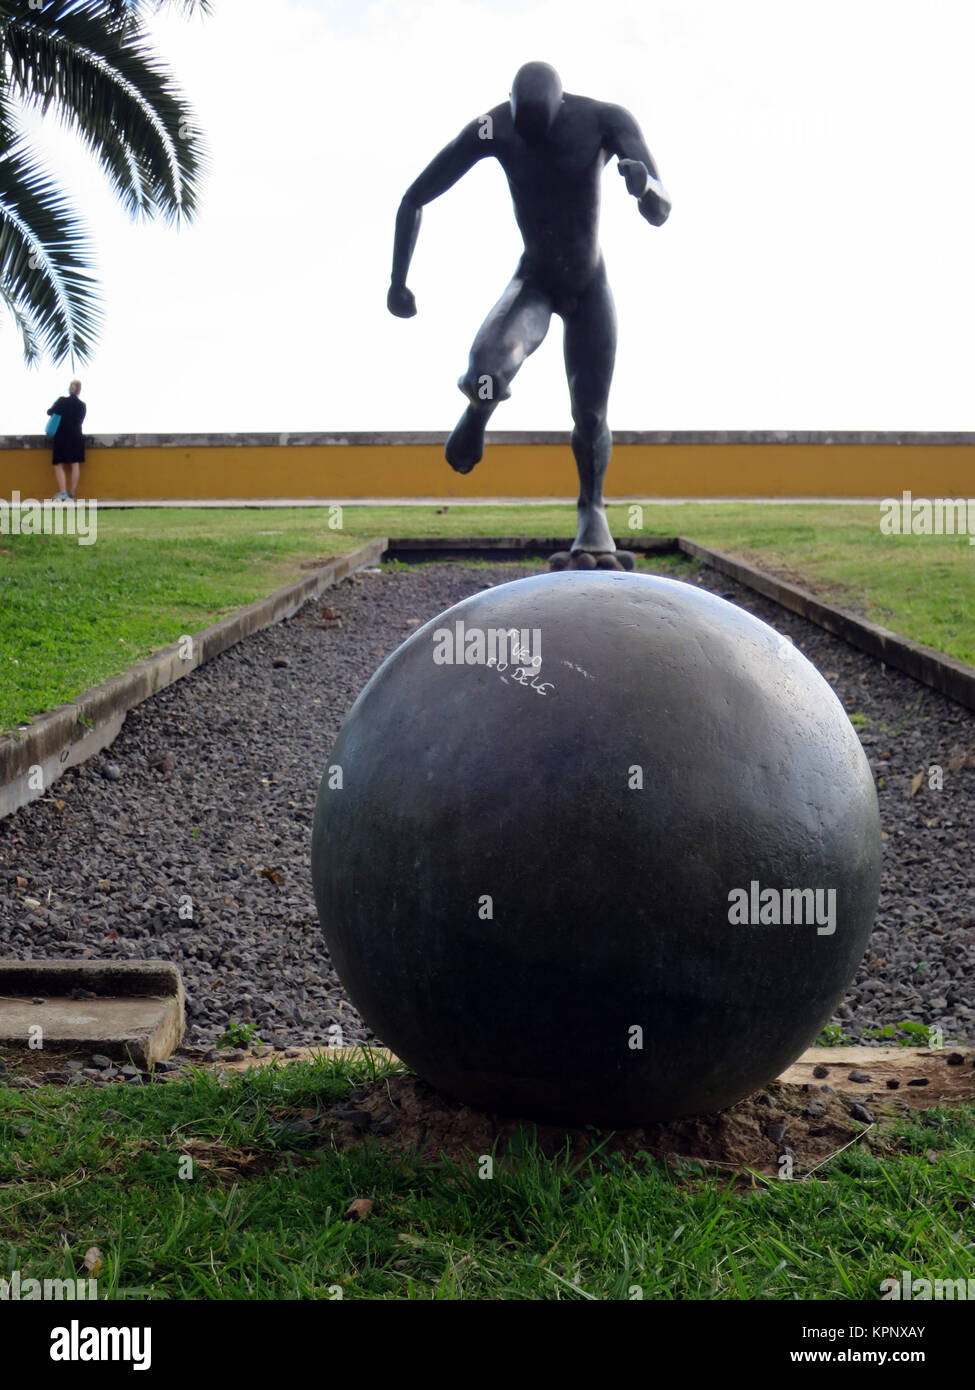 Fussballer-Denkmal an der Uferpromenade, Funchal, Madeira, Portugal Banque D'Images